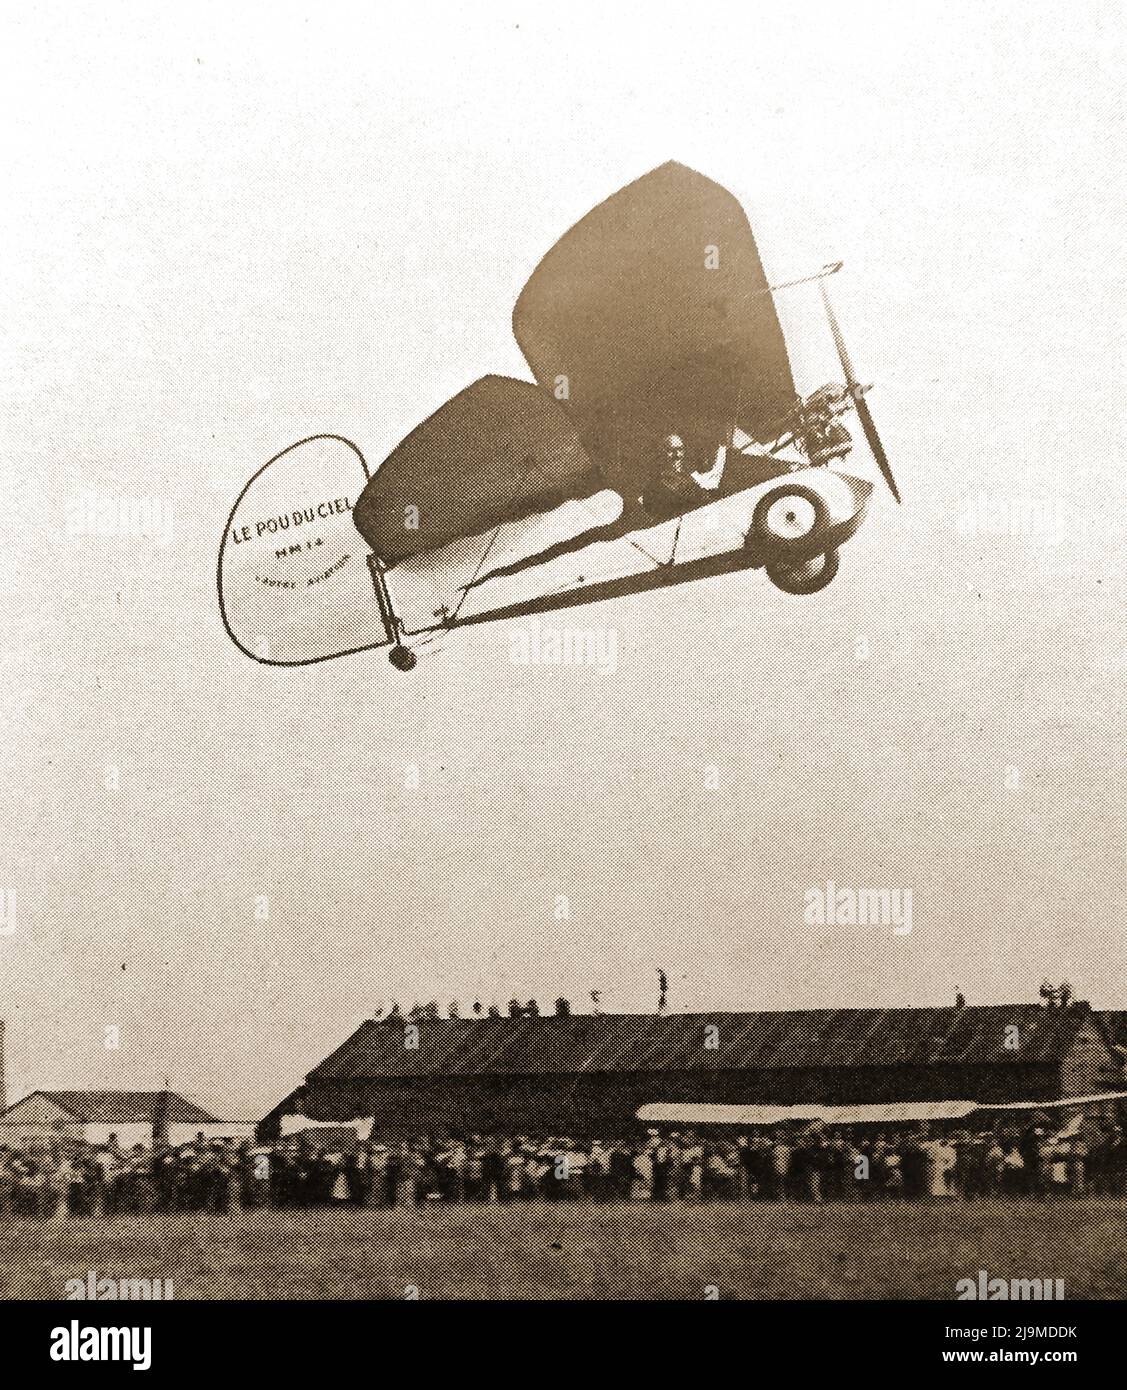 Ein frühes Foto des französischen „Flying Flea“, der bei einer Flugshow abheben soll. Auch bekannt als das Mignet Pou-du-Ciel oder „Laus des Himmels“. Es wurde vom Franzosen Henri Mignet (1893-1965) entworfen, der ein französischer Radioingenieur war. Das Flugzeug hatte eine Spannweite von 19,5 Fuß, eine Länge von 11,5 Fuß und wog 450 Pfund -- Mignet Pou-du-Ciel ou avion « Pou du Ciel » conçu par le Français Henri Mignet (1893-1965) qui était ingénieur Radio. L’avion avait une envergure de 19,5 pieds, une longueur de 11,5 pieds et pesait 450 livres. Stockfoto